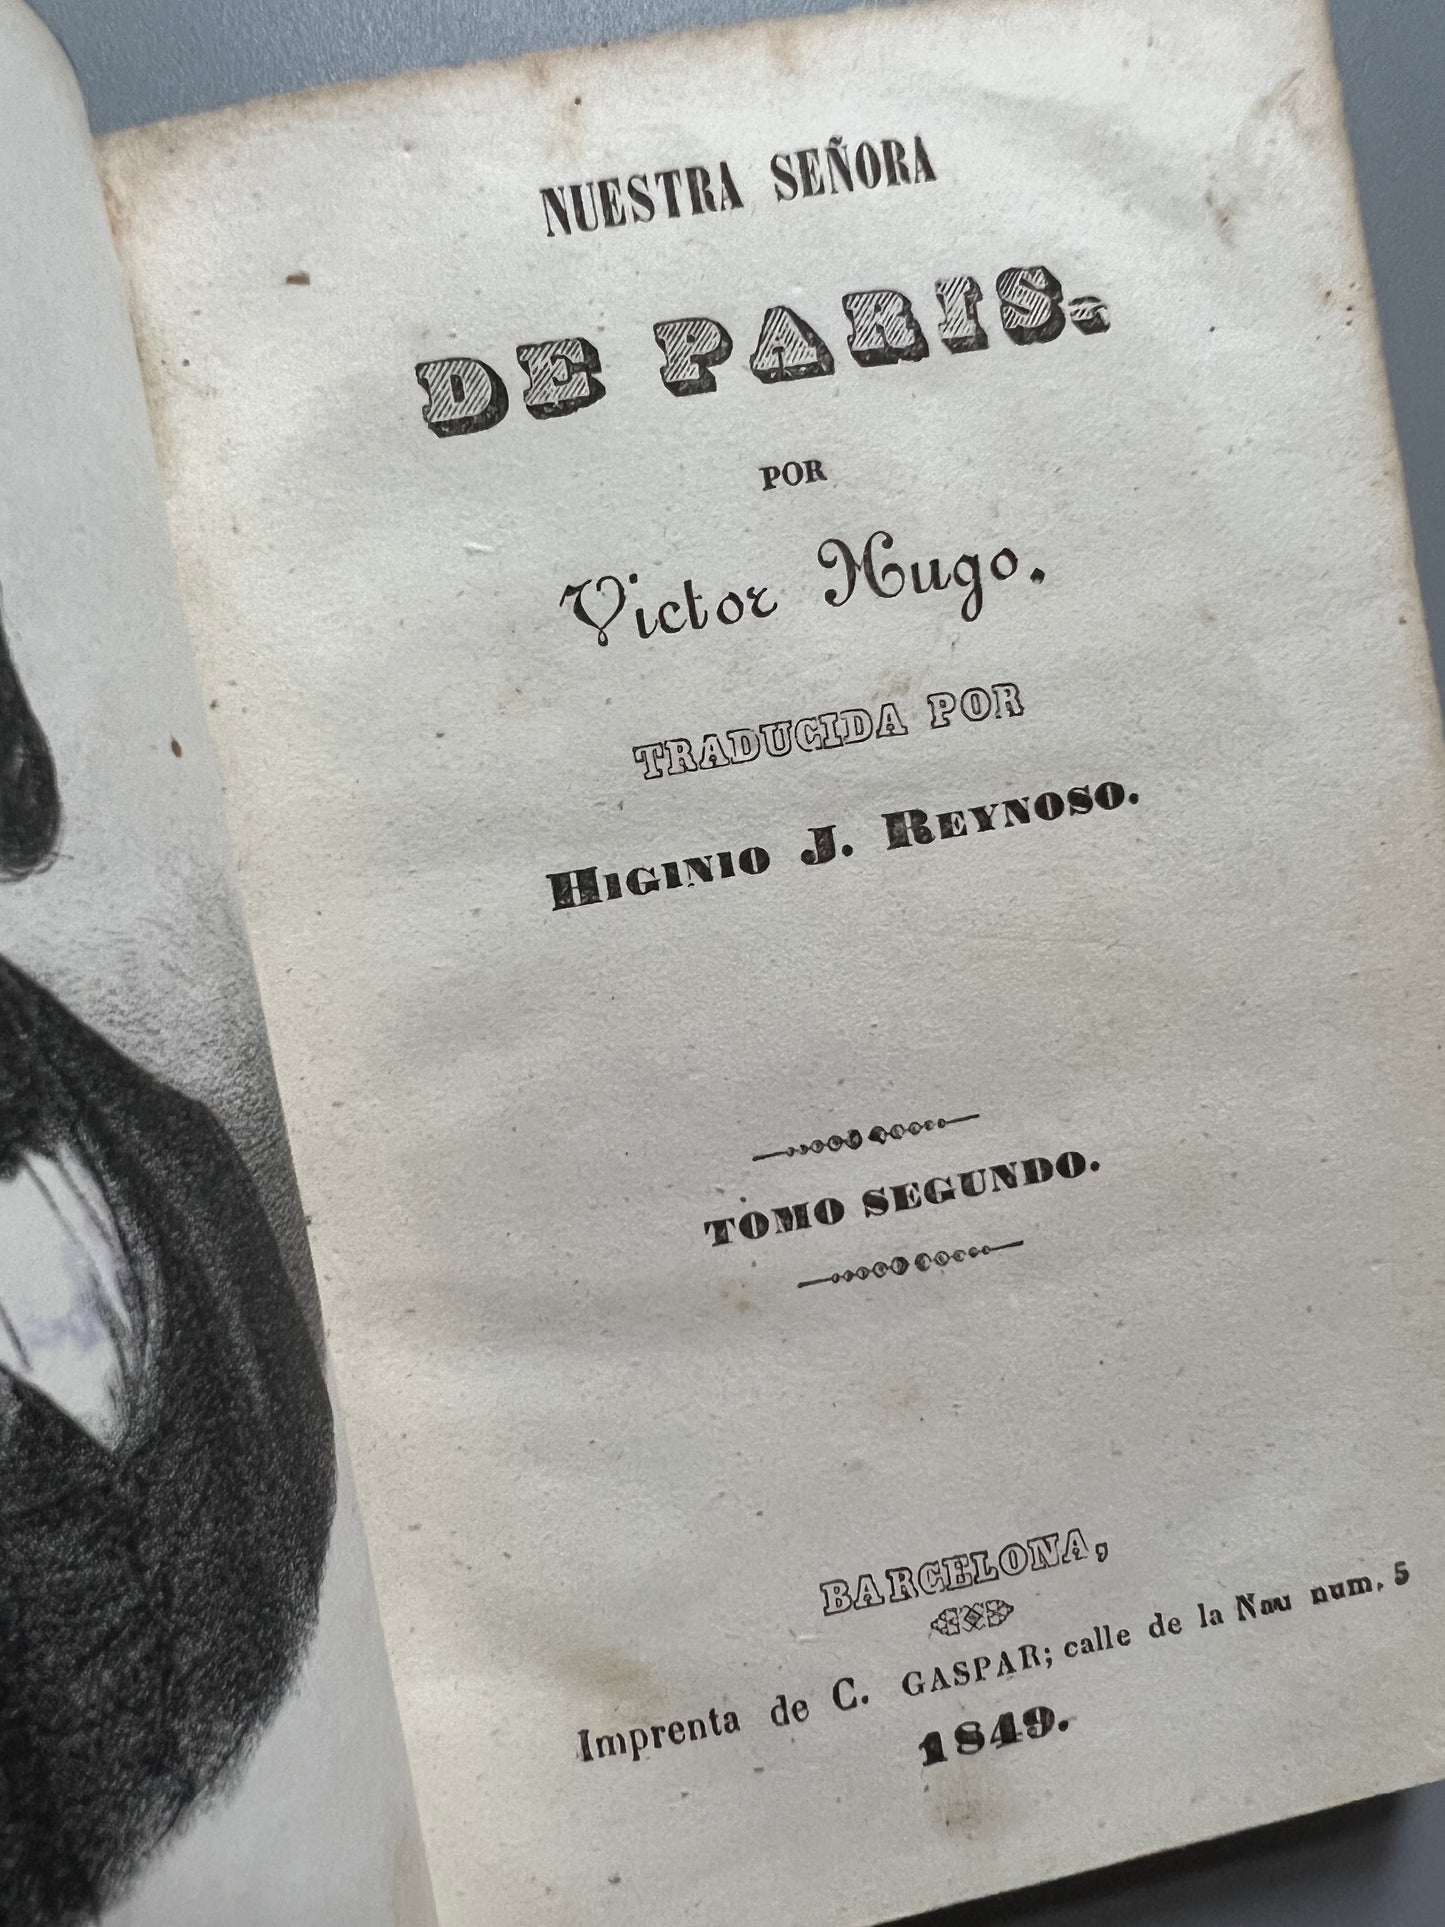 Nuestra Señora de Paris, Victor Hugo -  Imprenta de C. Gaspar, 1847/1849